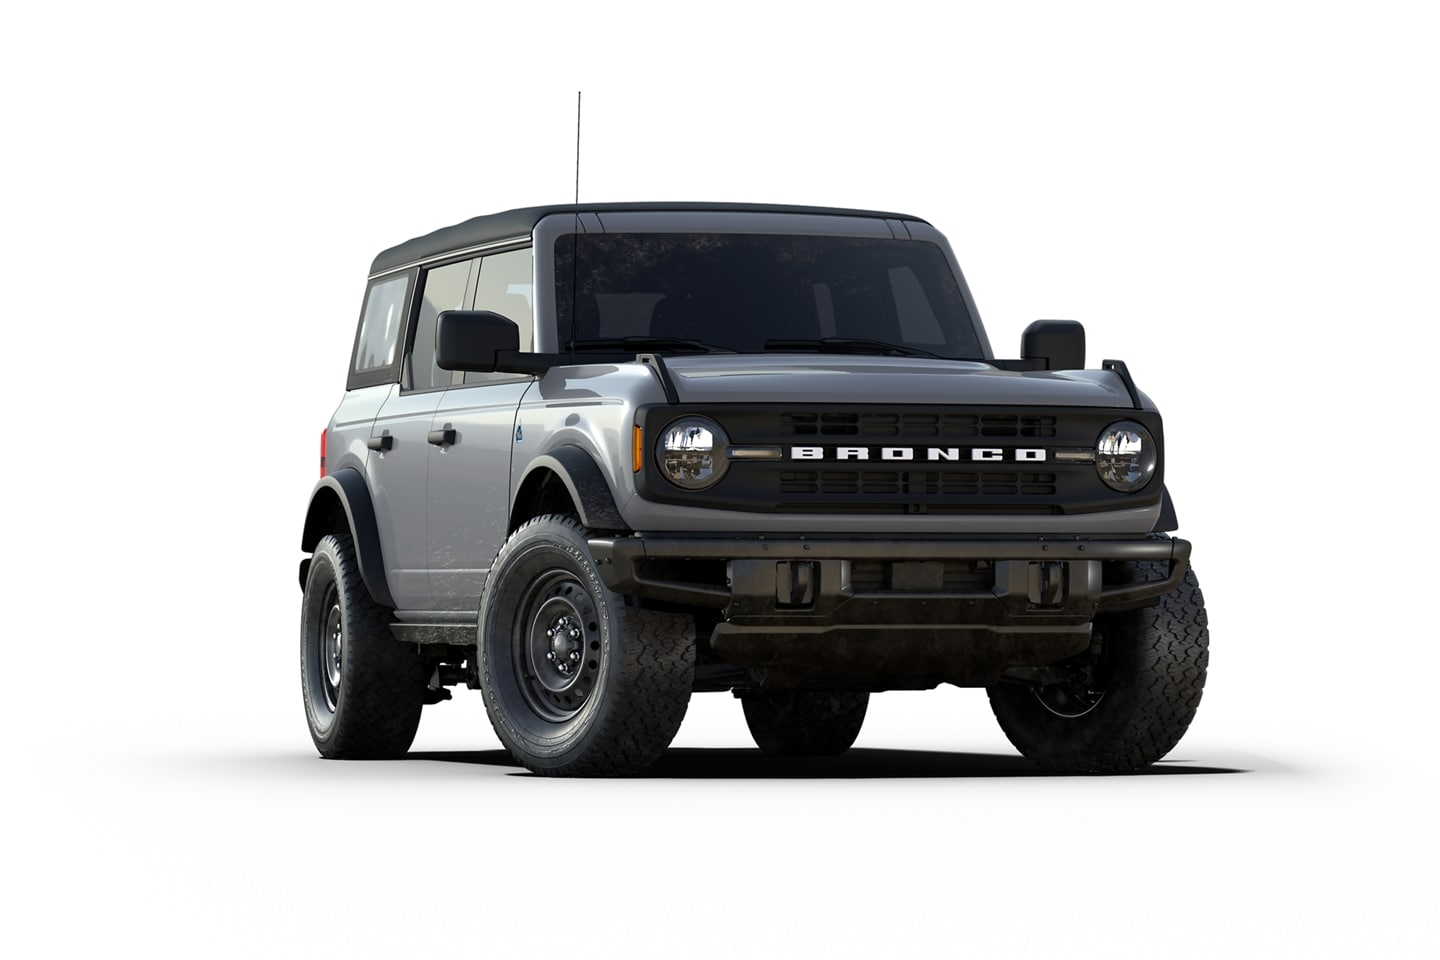 2021 Ford® Bronco™ Black Diamond™ model